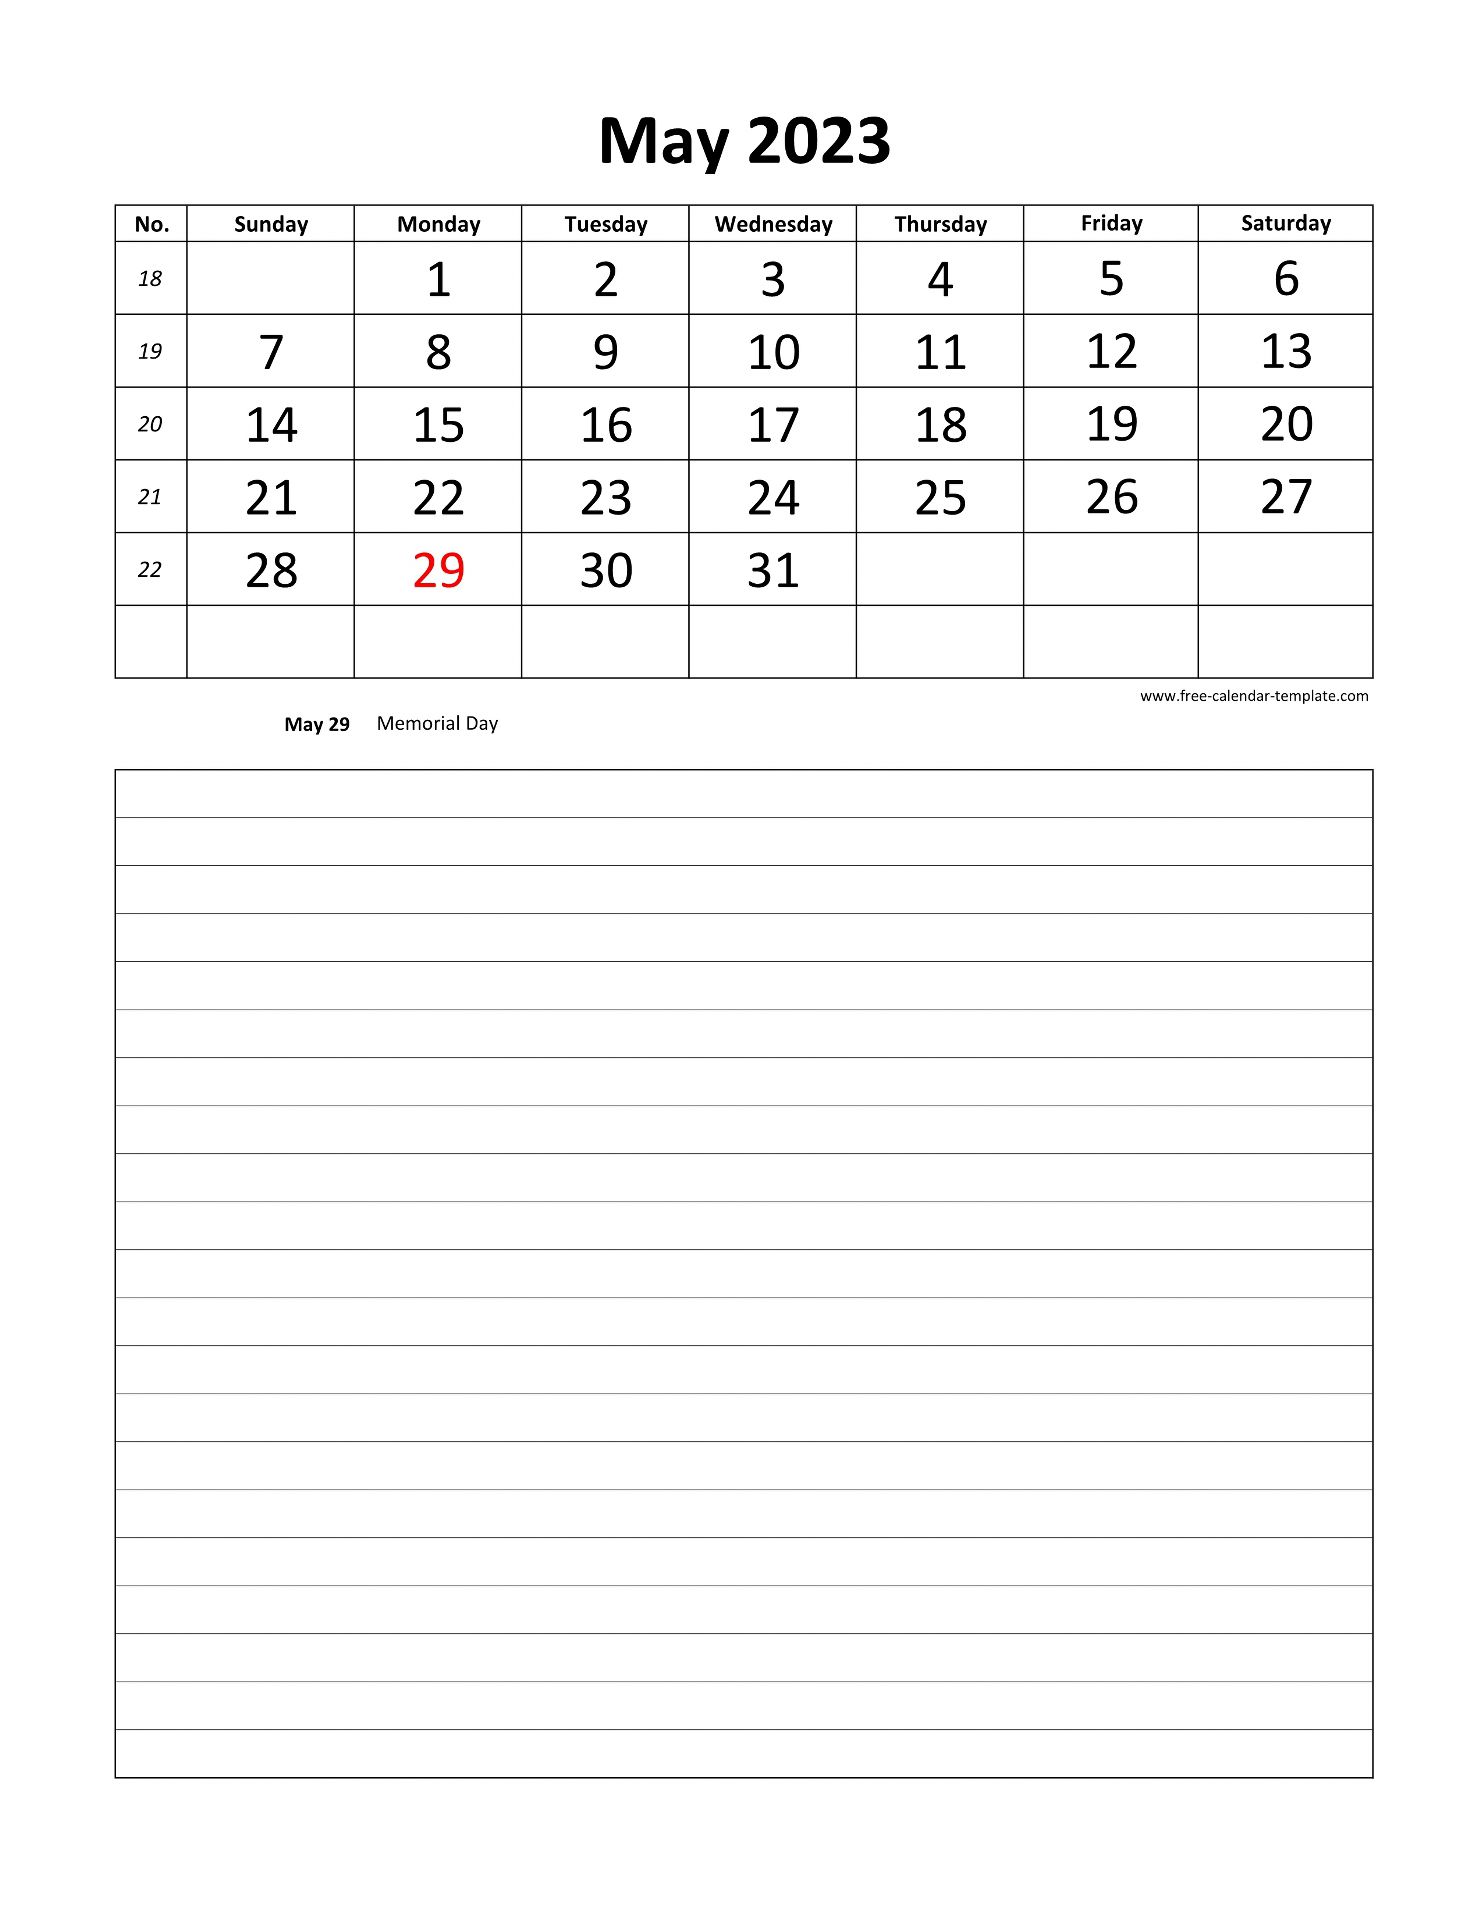 May 2023 Free Calendar Tempplate Free Calendar